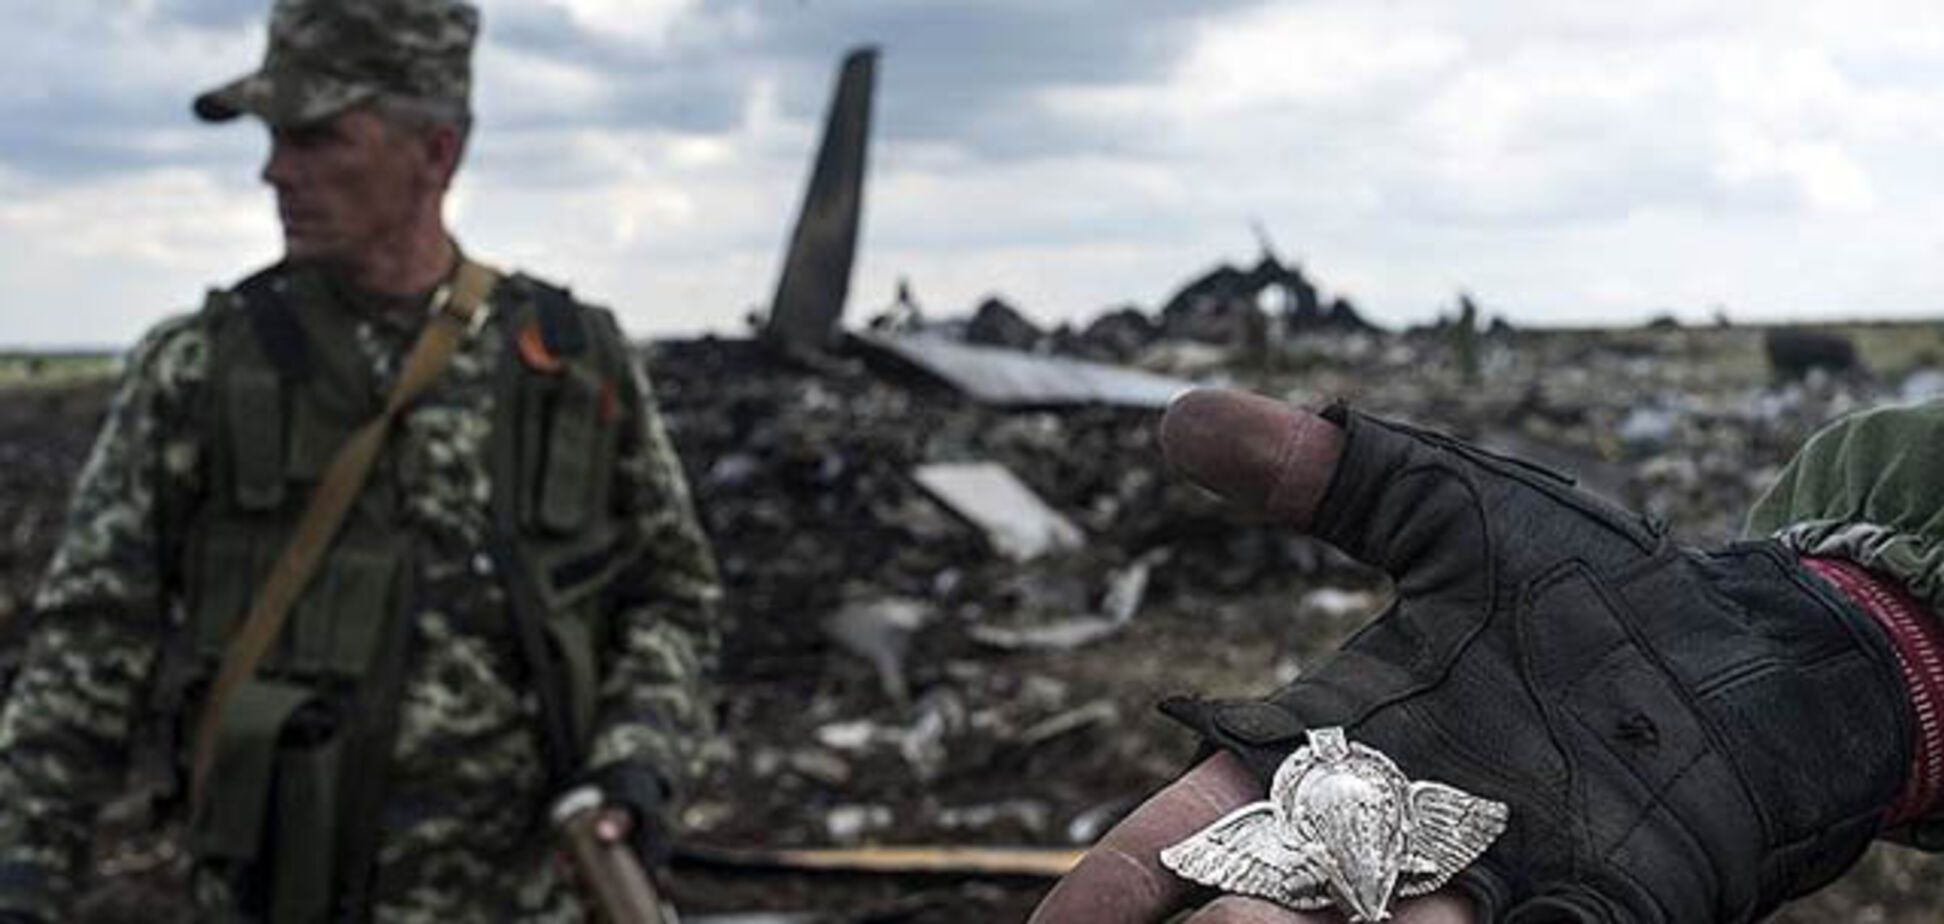 Годовщина крушения ИЛ-76 под Луганском. Все факты об ужасной трагедии